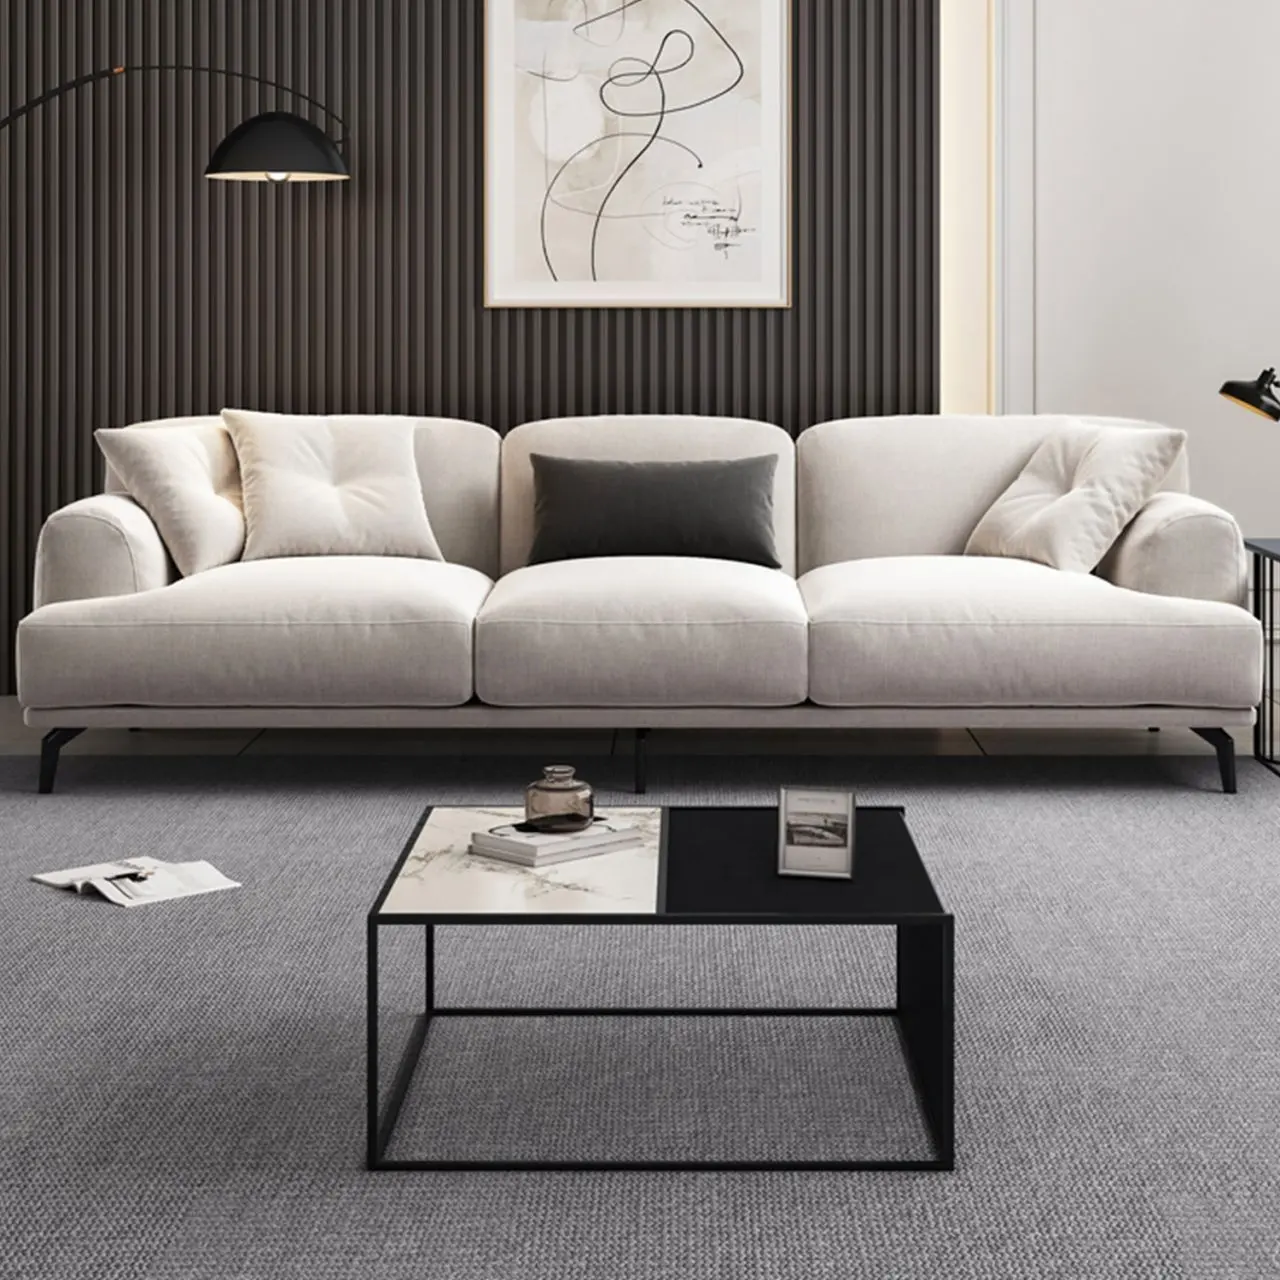 Individuelles italienisches hochwertiges Sofa-couch-Wohnzimmermöbel